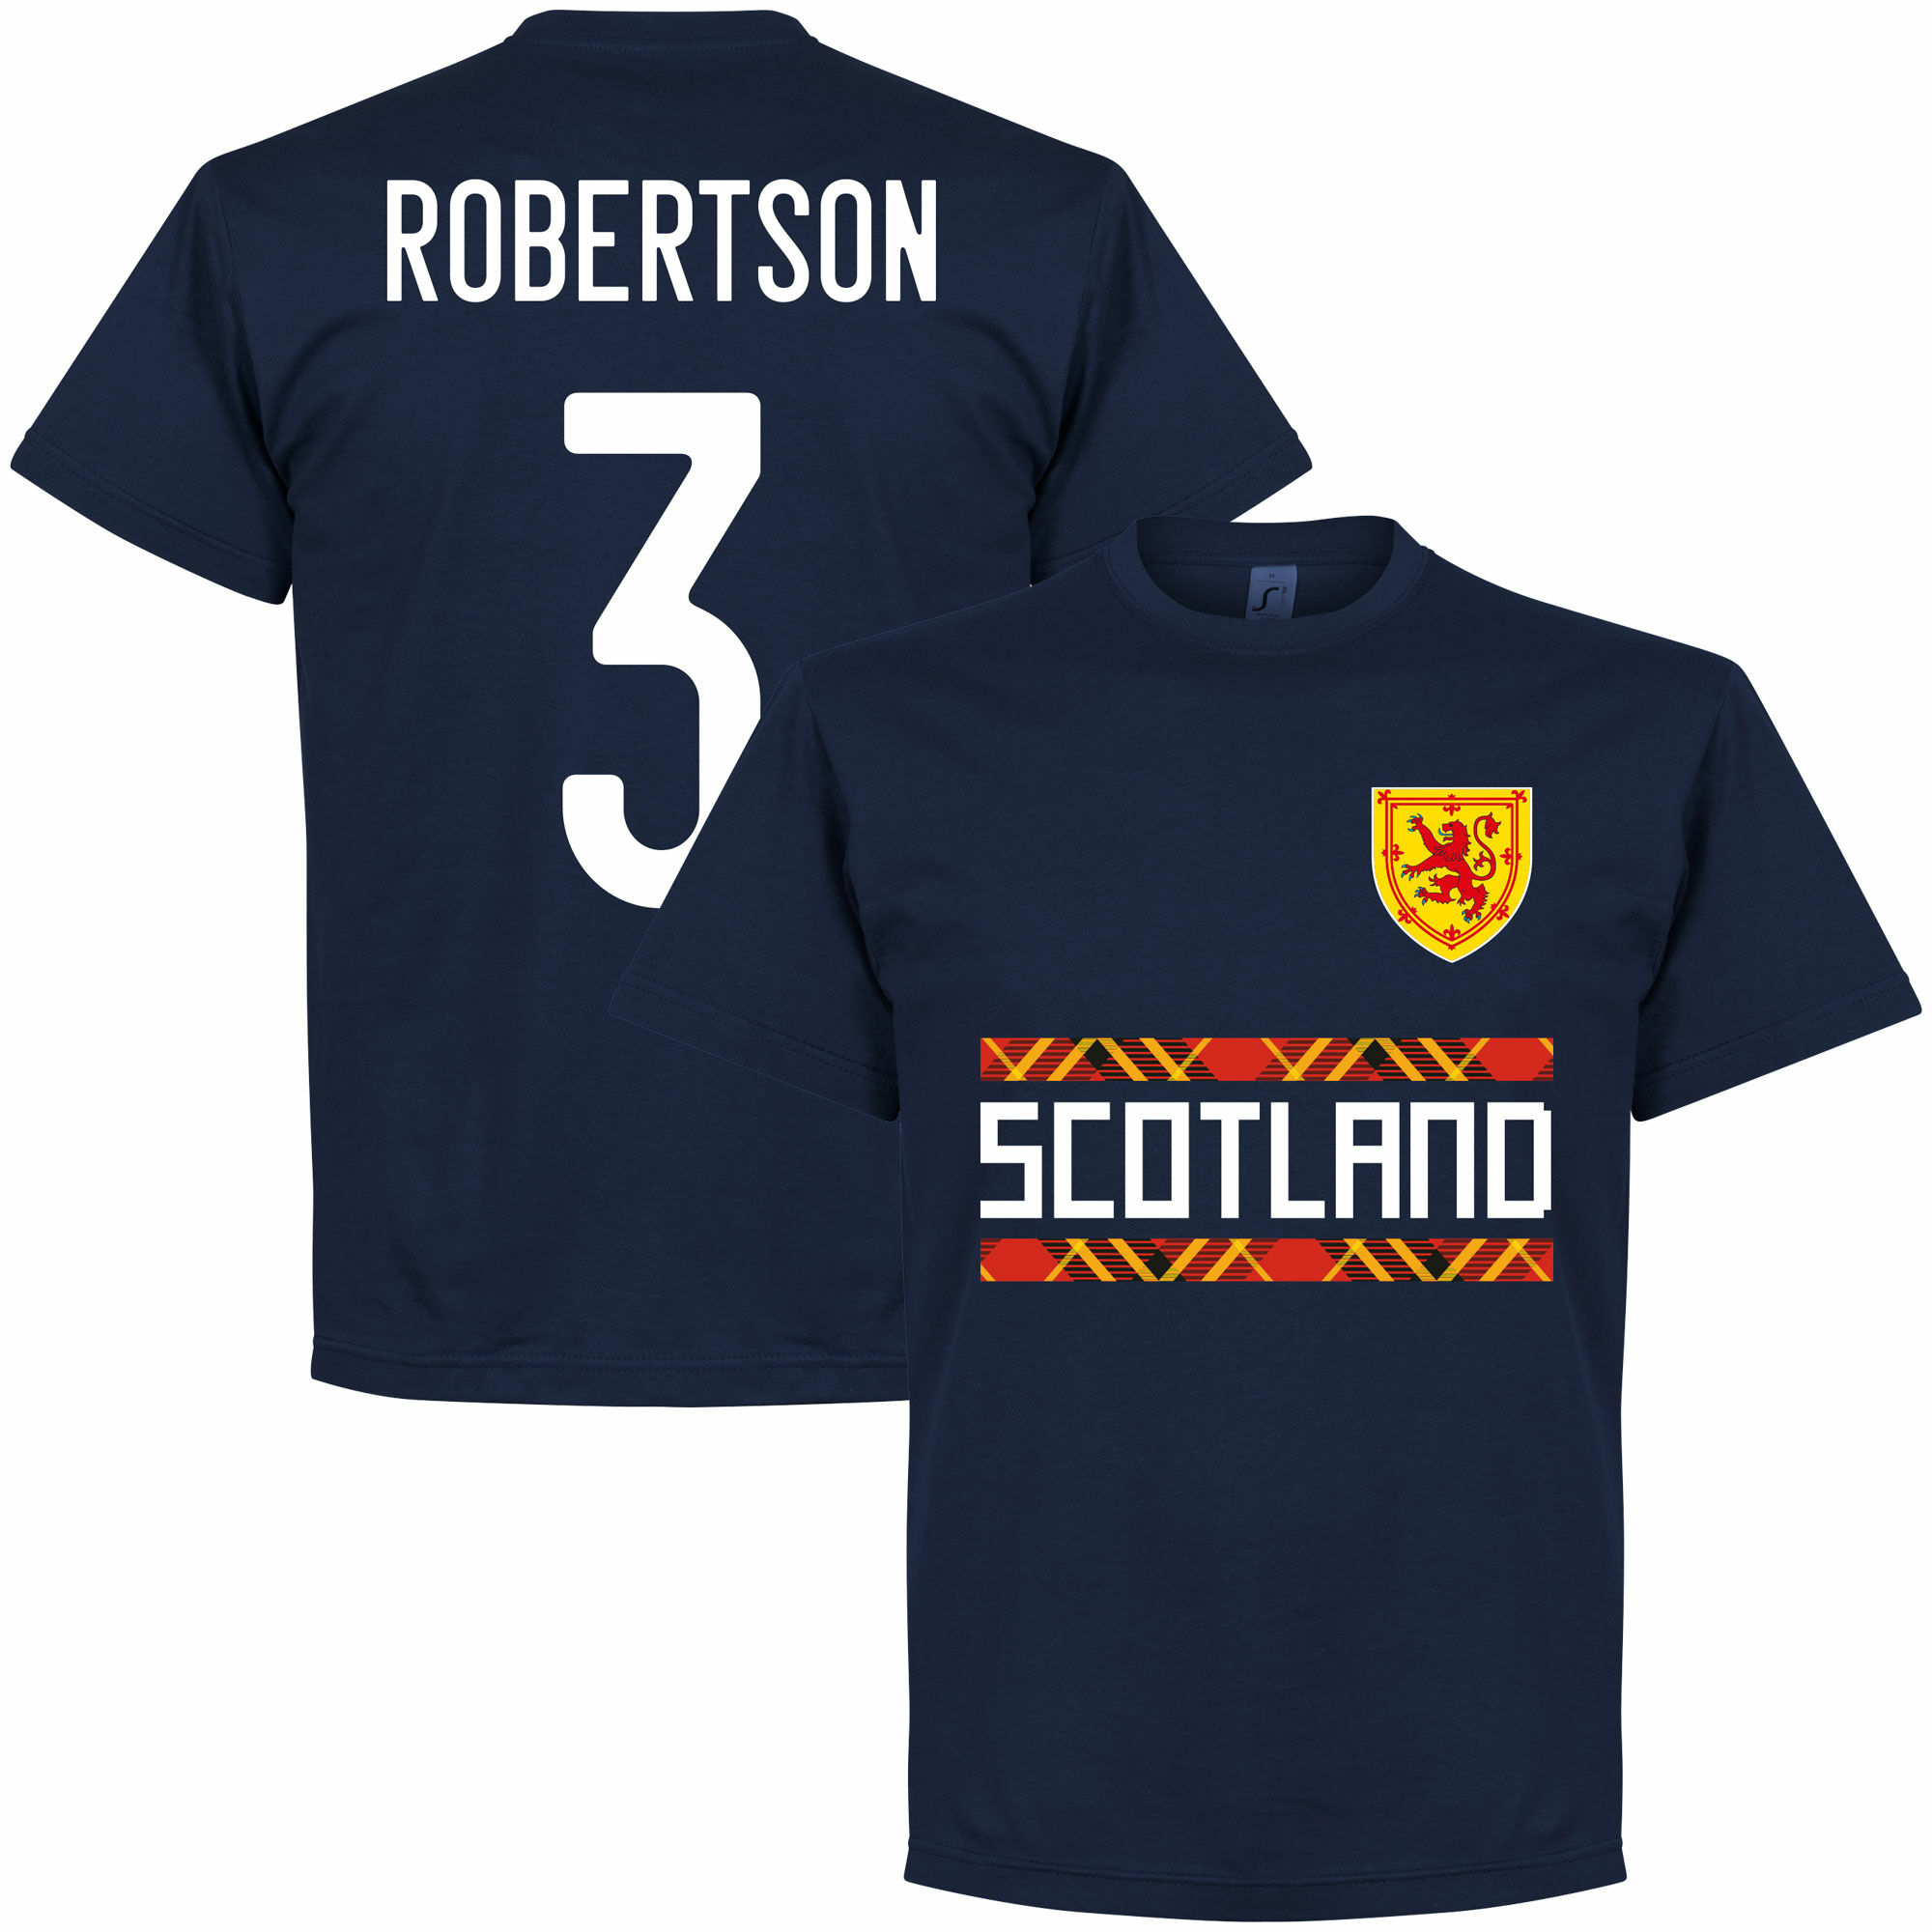 Skotsko - Tričko - Andrew Robertson, číslo 3, modré